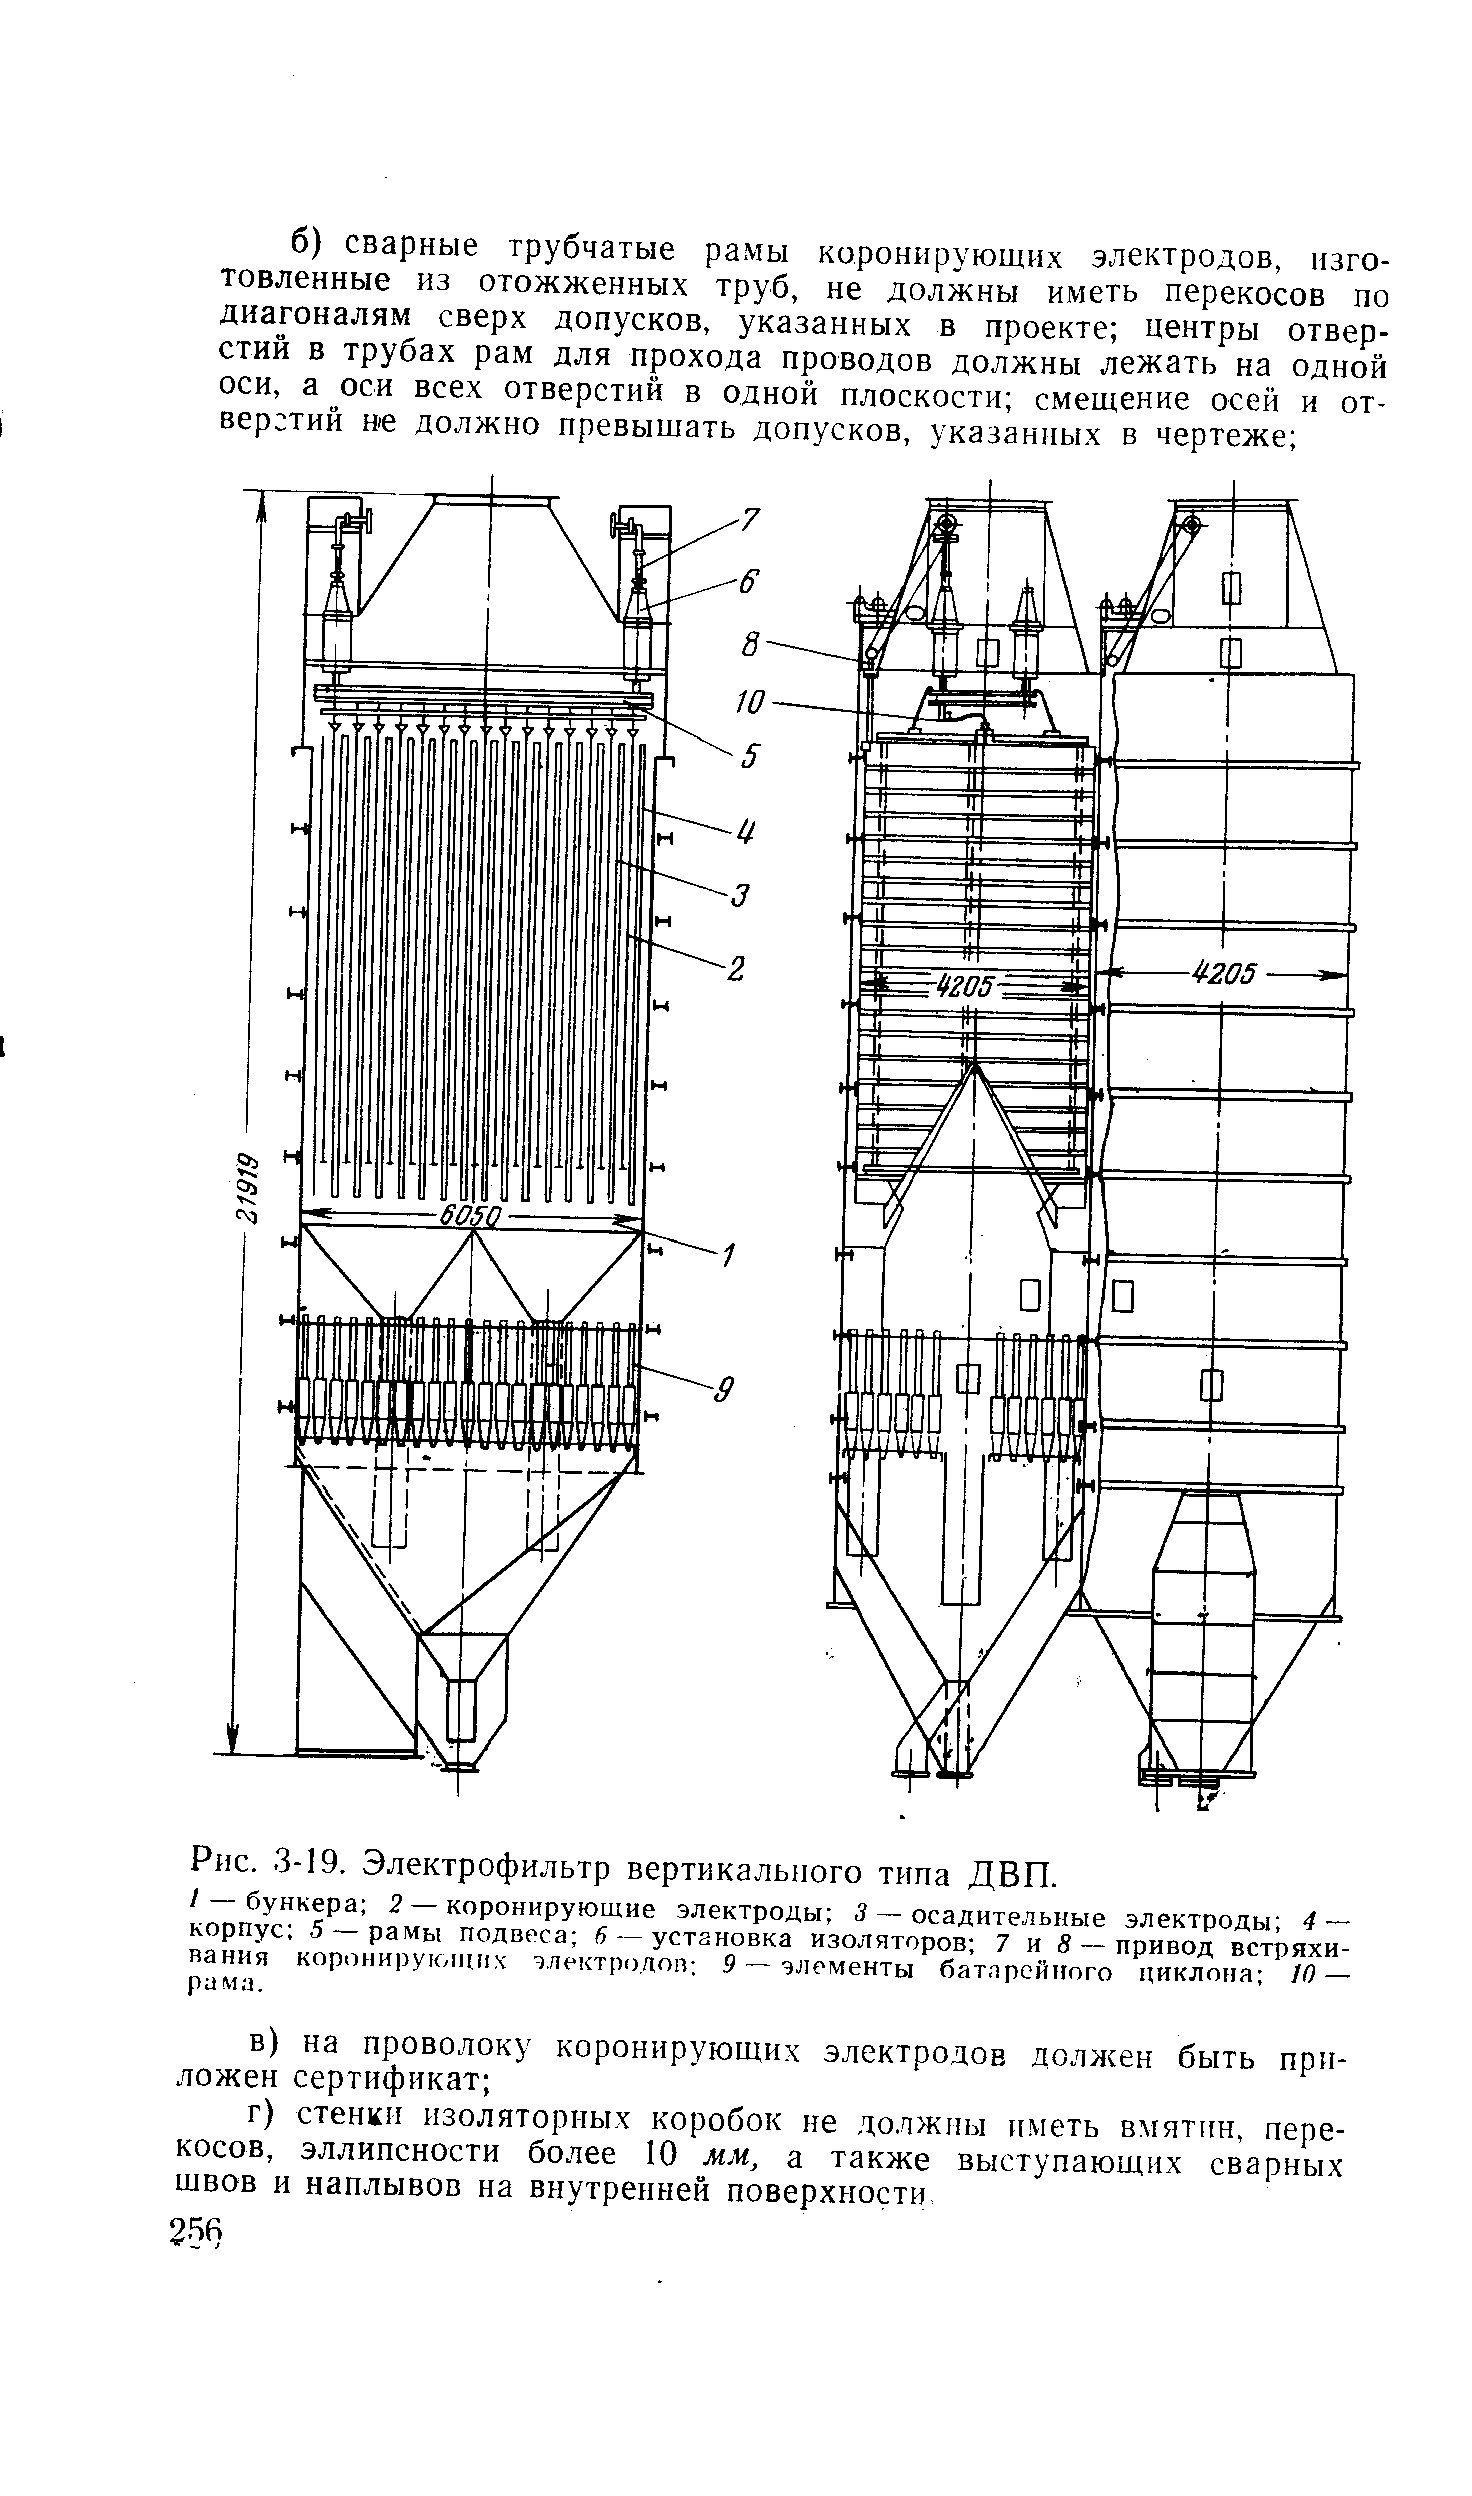 Рис. 3-19, Электрофильтр вертикального типа ДВП.
